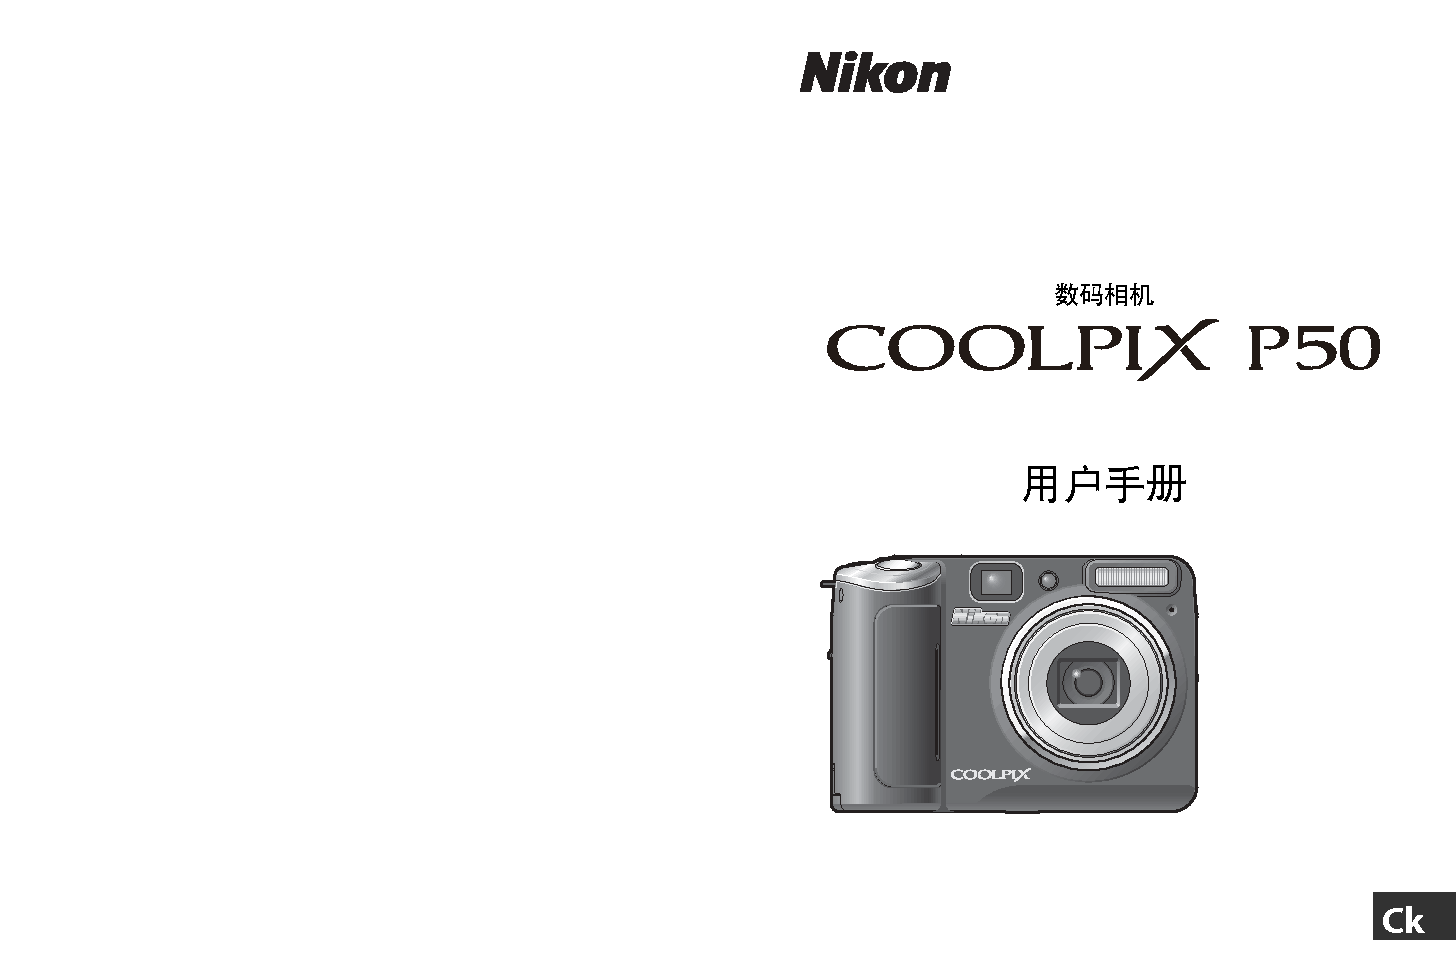 尼康 Nikon COOLPIX P50 用户指南 封面